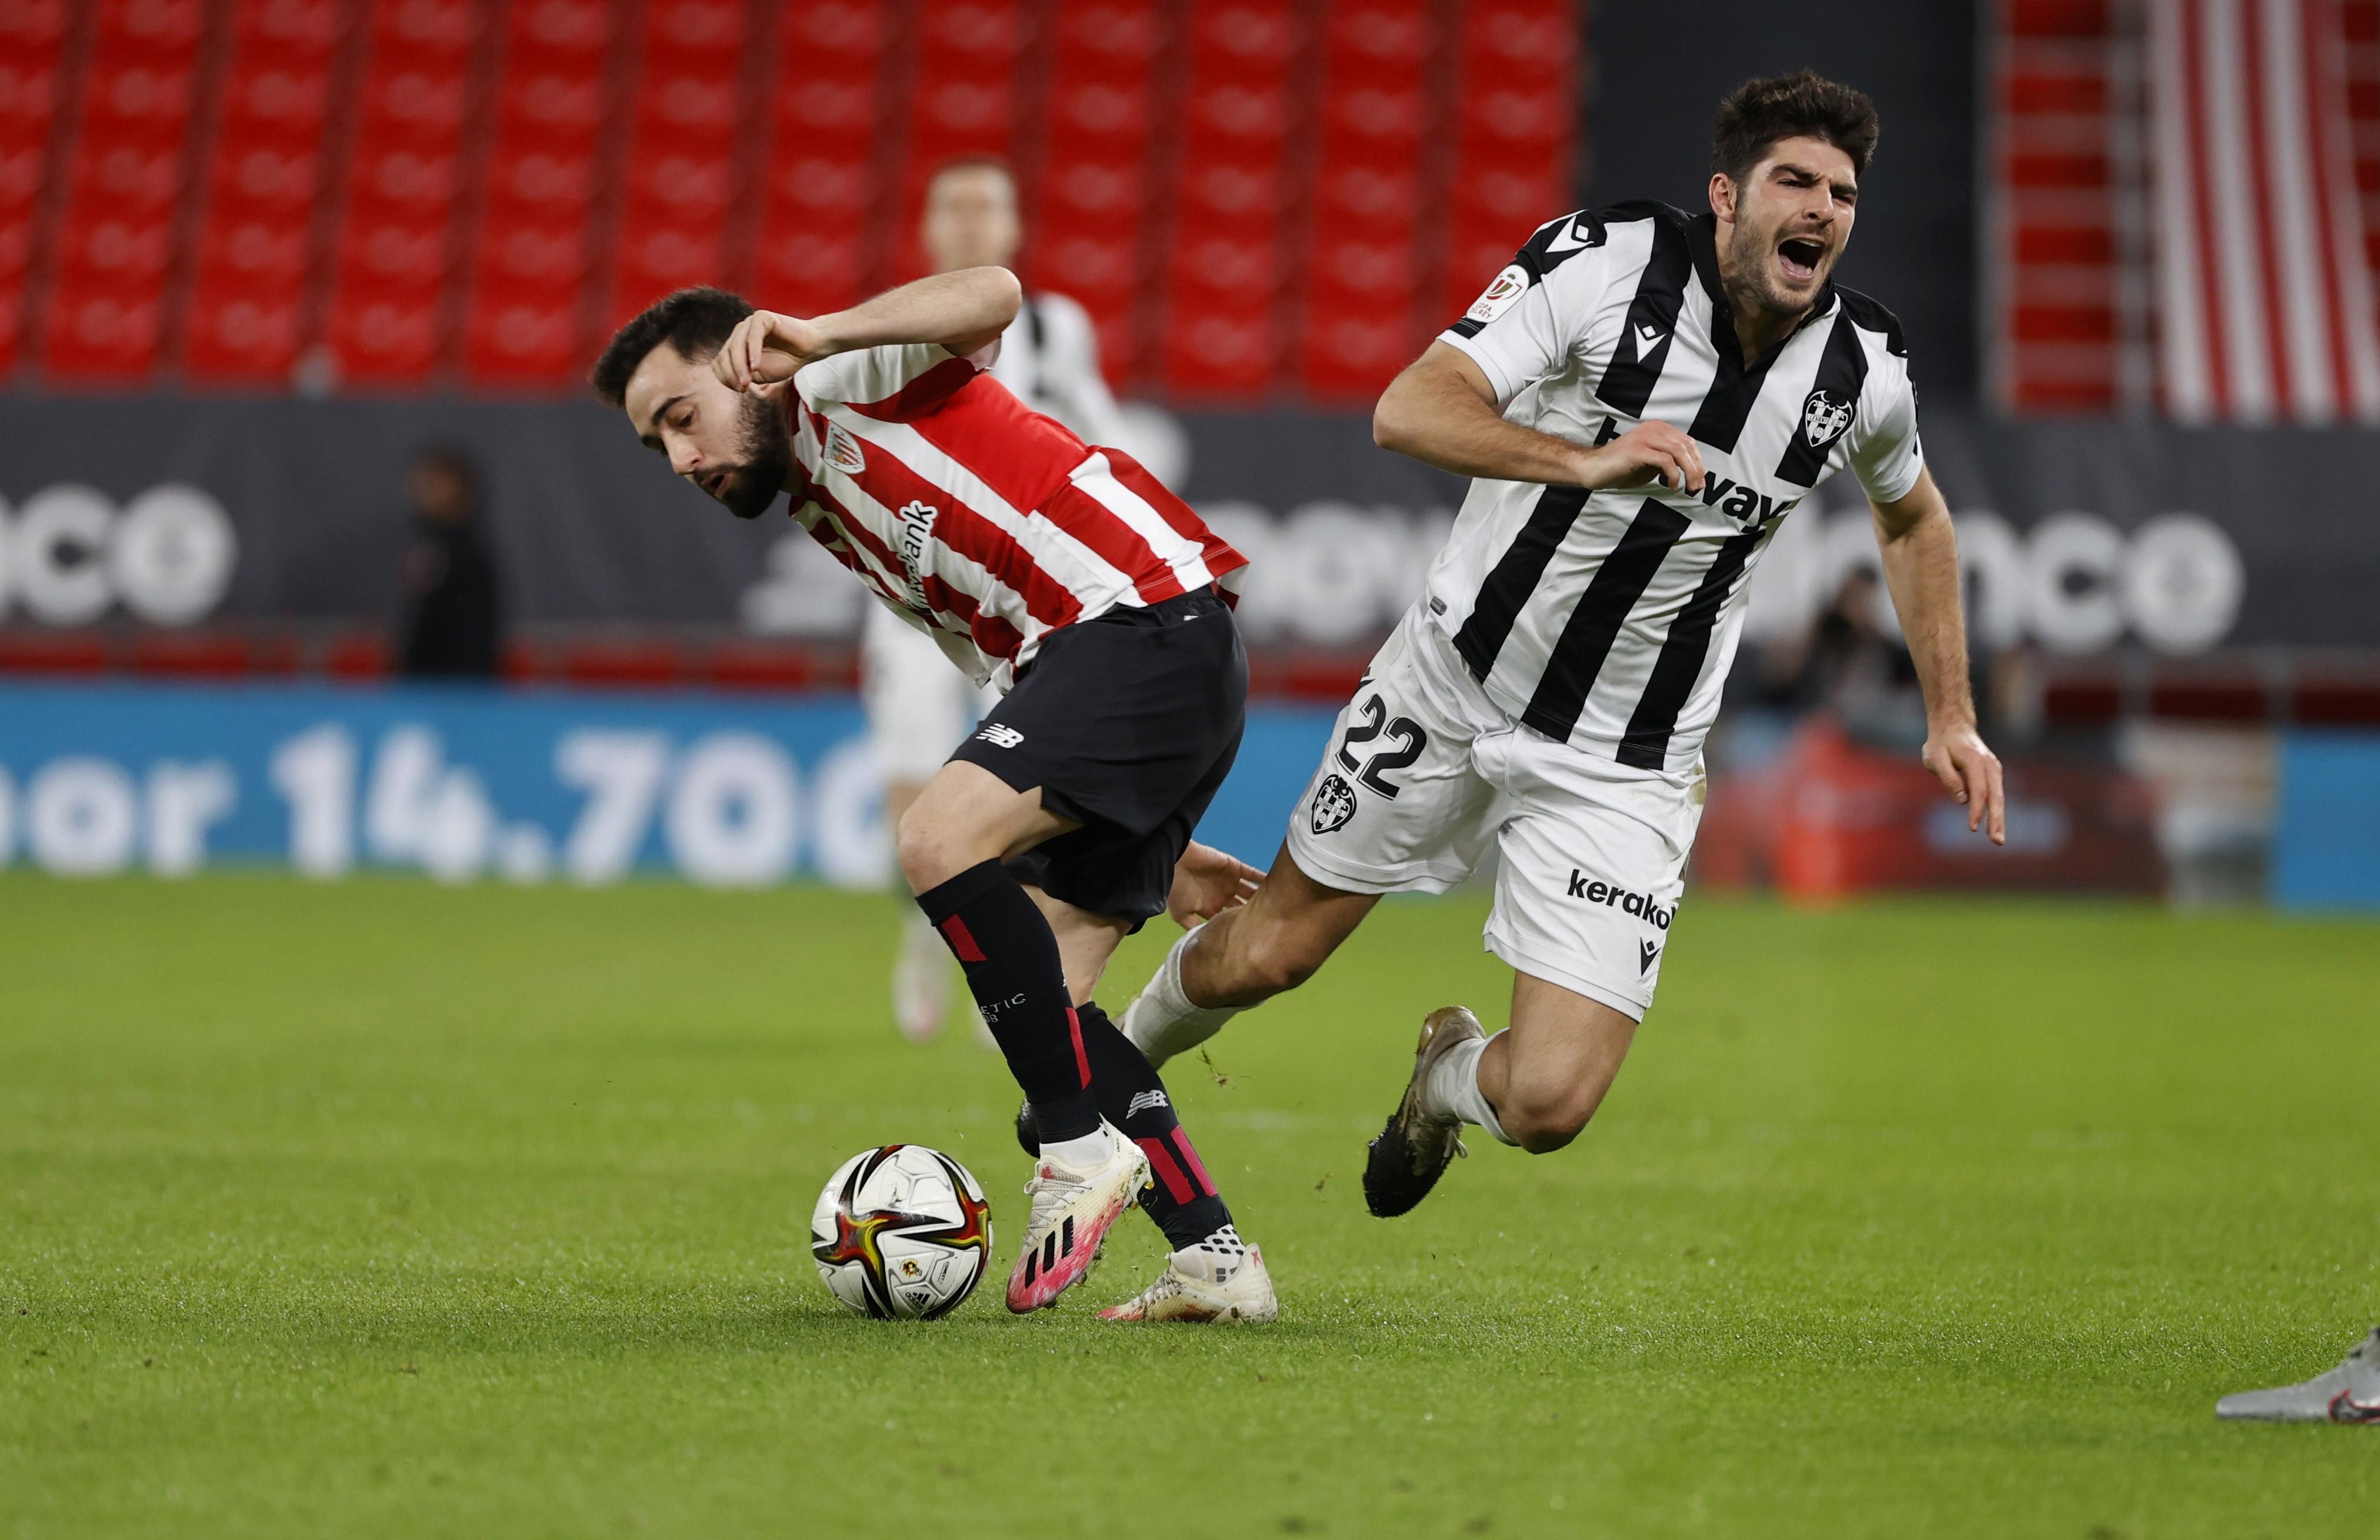 El jugador del Athletic Bilbao, Unai López  corta el balón ante el centrocampista del Levante, Gonzalo Melero, durante el encuentro correspondiente a la ida de las semifinales de la Copa del Rey. Foto Prensa Libre: EFE.